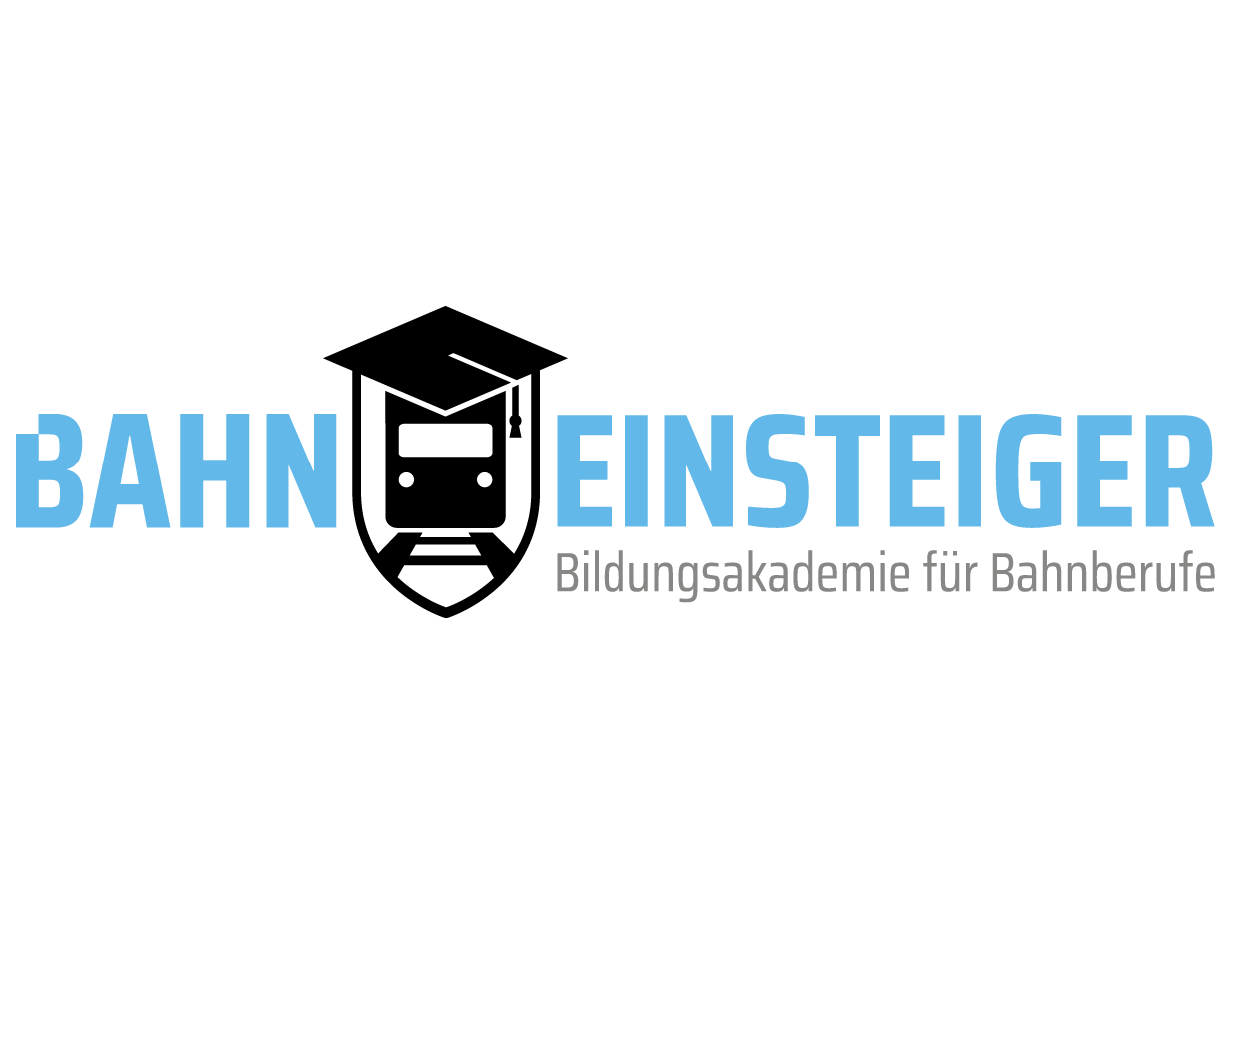 Bahn Einsteiger GmbH